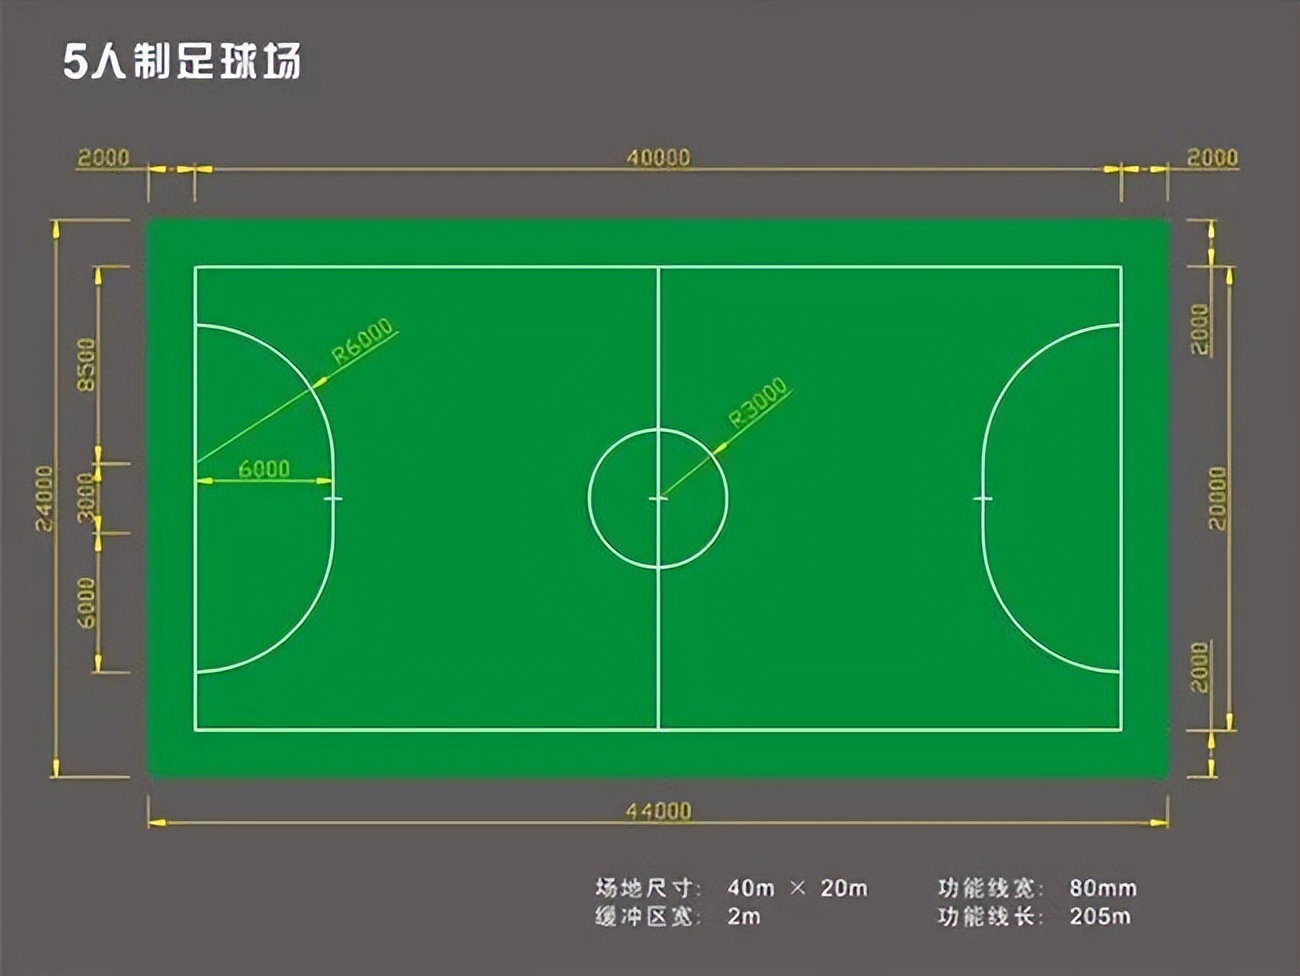 正规足球场尺寸(足球知识普及丨各类足球场标准尺寸)